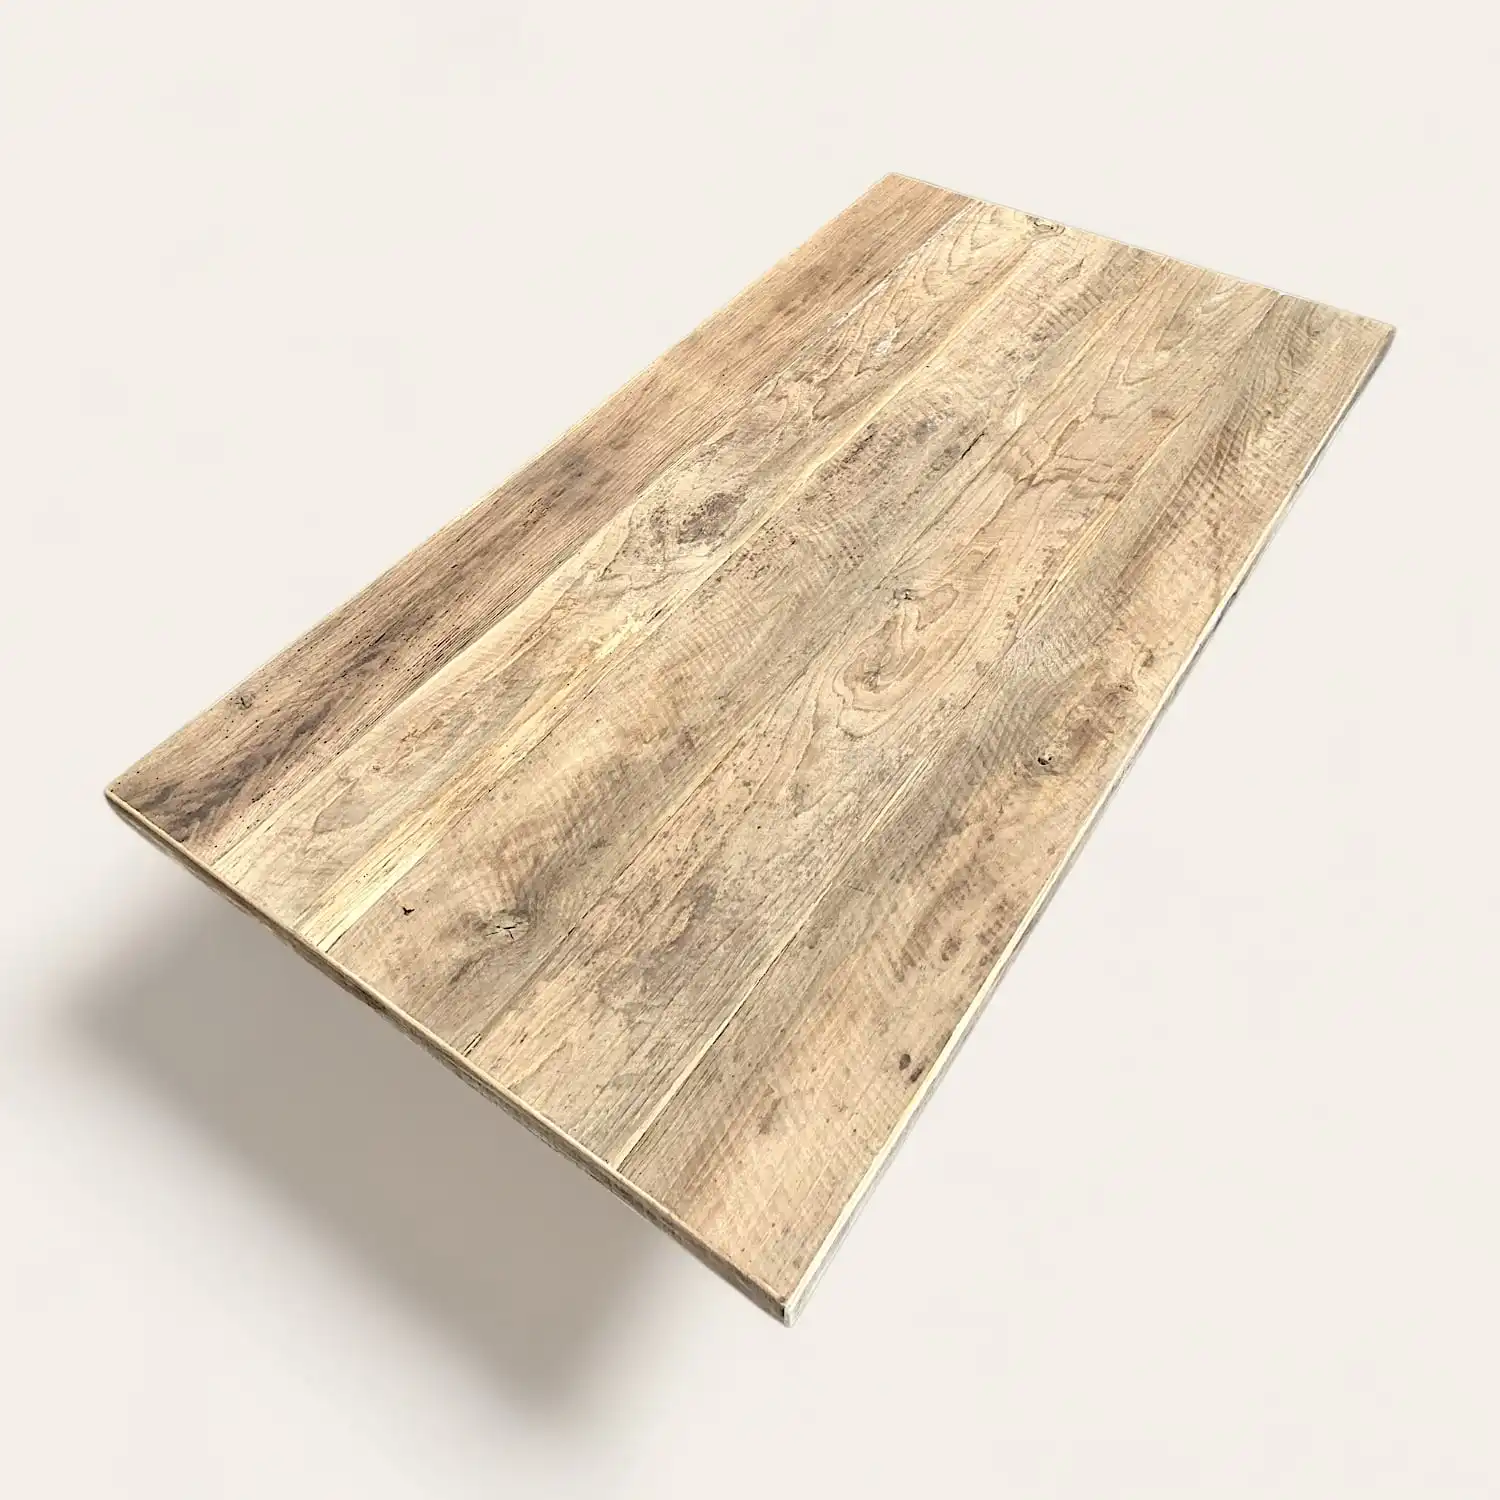  Une image d'une table ancienne en bois sur une surface blanche. 